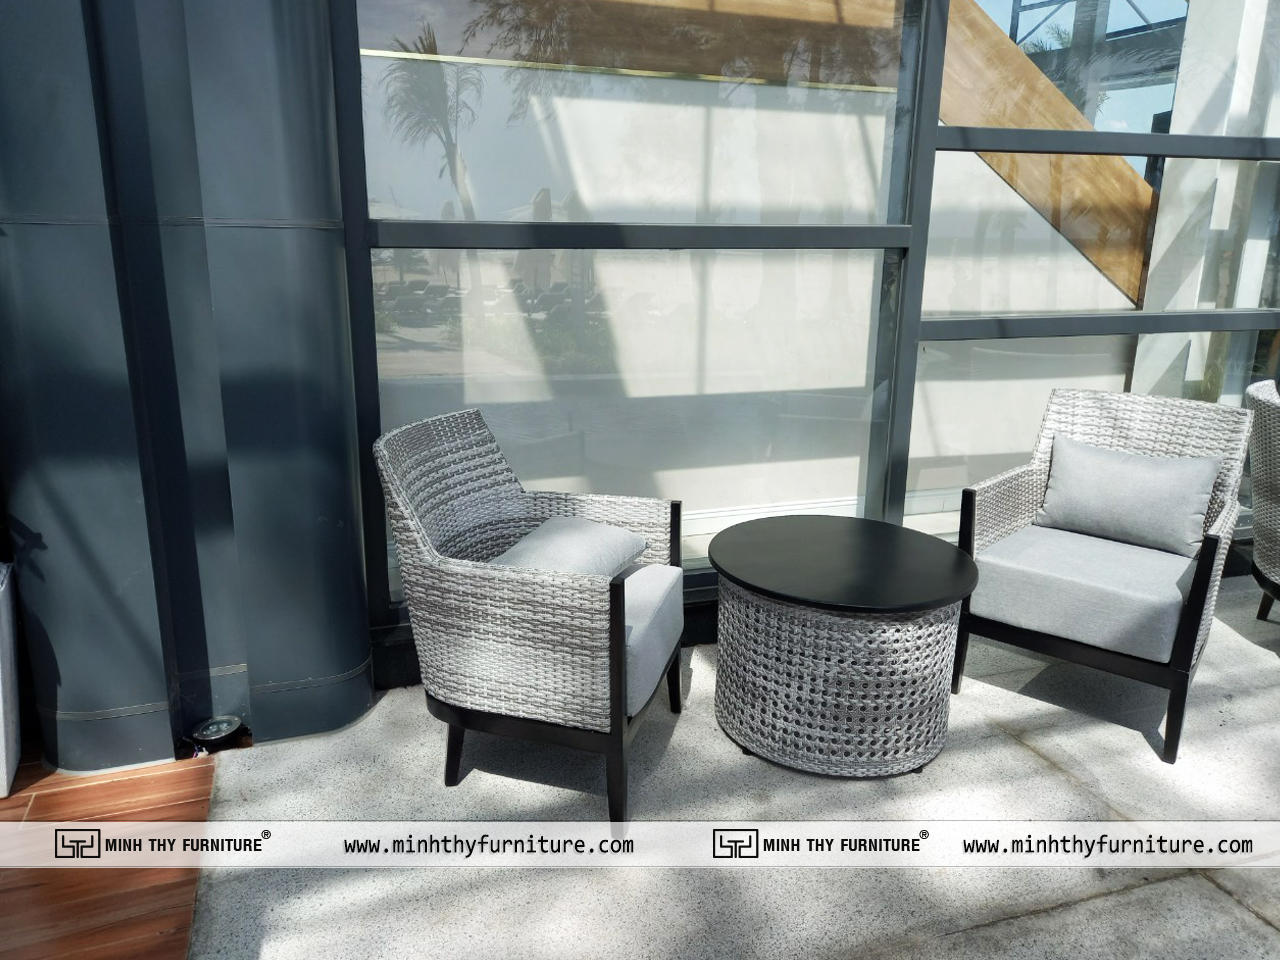 bàn ghế ban công Minh Thy cung cấp tại Minh Thy Furniture cung cấp bàn ghế ngoài trời tại Sale Gallery Charm Resort Hồ Tràm